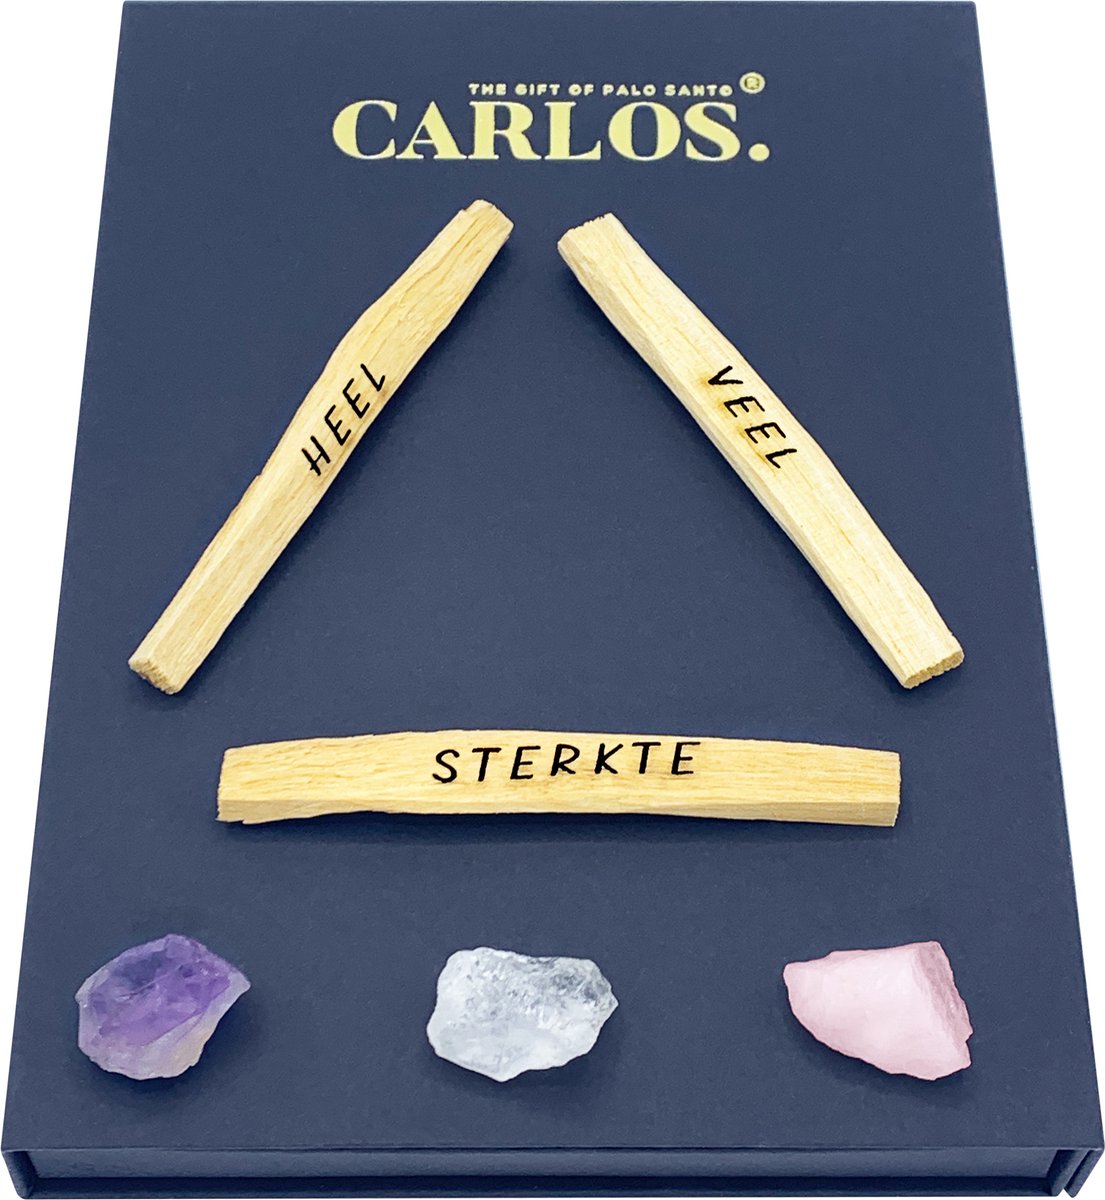 Luxe giftset PALO SANTO met gegraveerde boodschap HEEL VEEL STERKTE + 3 edelstenen: amethist, bergkristal, rozenkwarts.